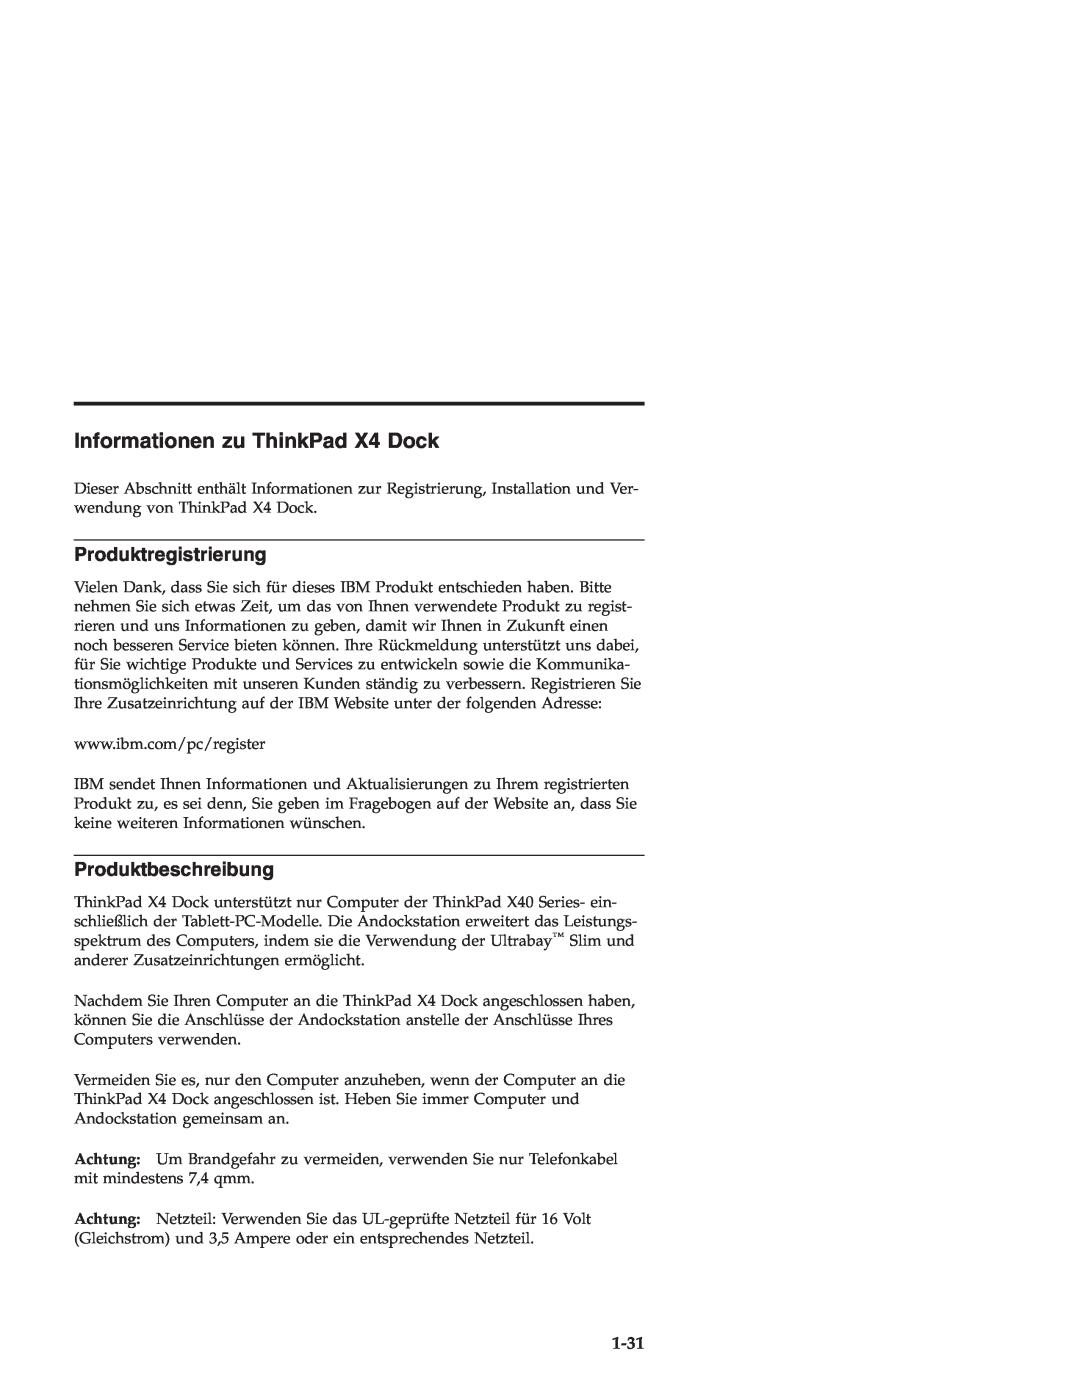 IBM manual Informationen zu ThinkPad X4 Dock, Produktregistrierung, Produktbeschreibung, 1-31 